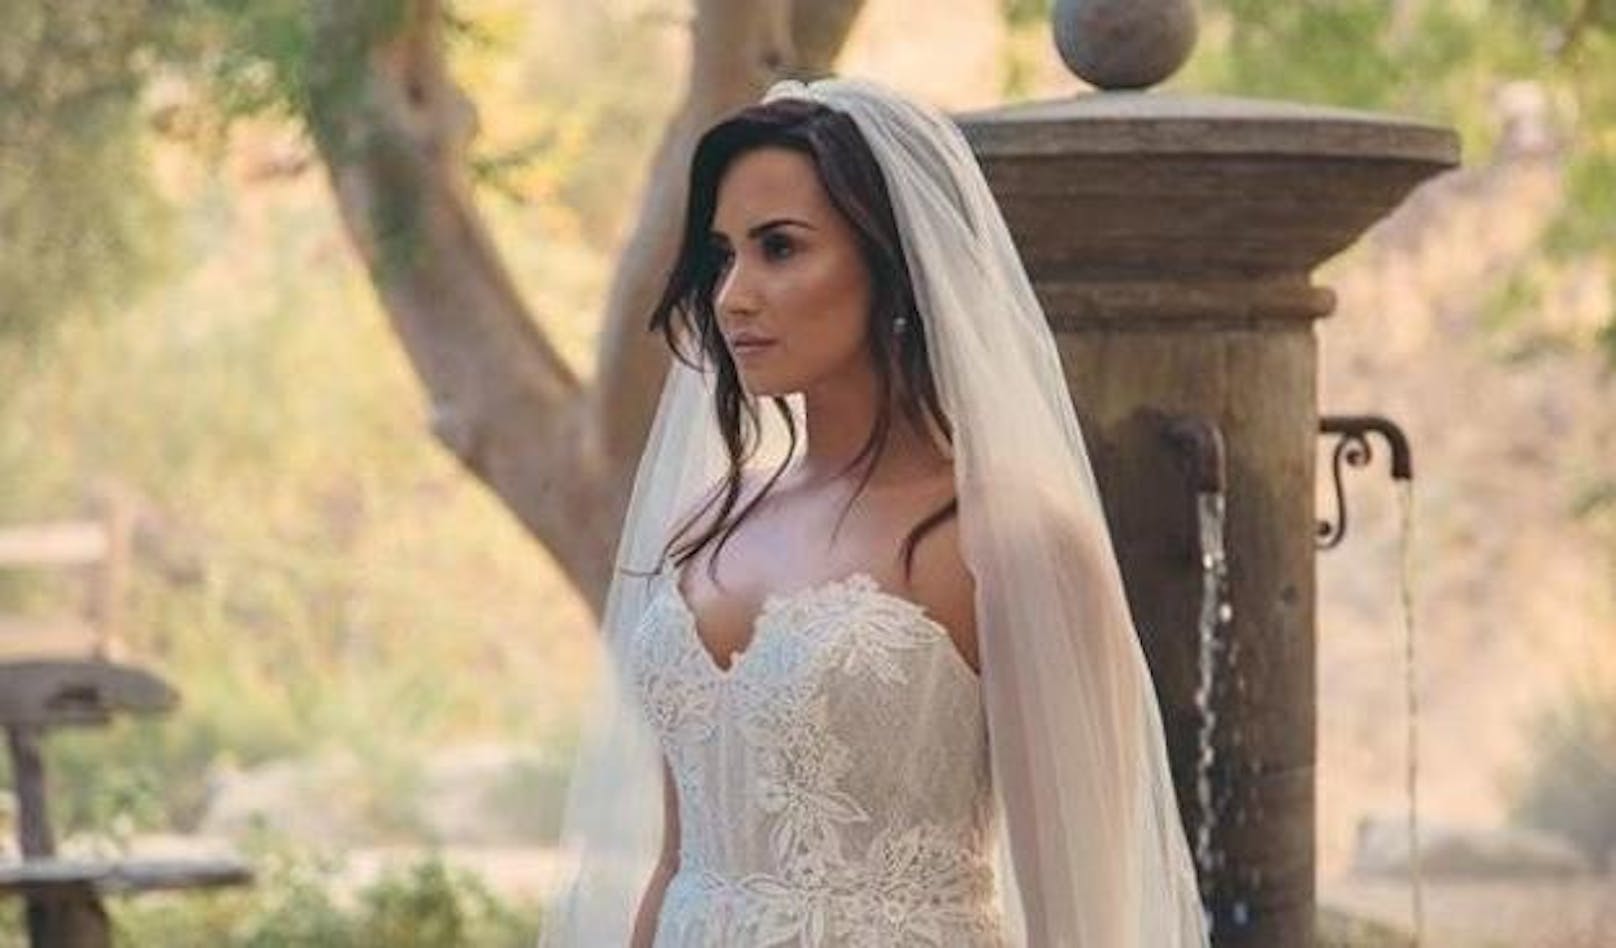 24.11.2017: Aufregung um Demi Lovato. Die Sängerin sorgte für wilde Spekulationen unter ihren Fans, weil sie auf Instagram ein Foto von sich im Hochzeitskleid postete. Was genau dahinter steckt, wurde bislang nicht aufgeklärt.